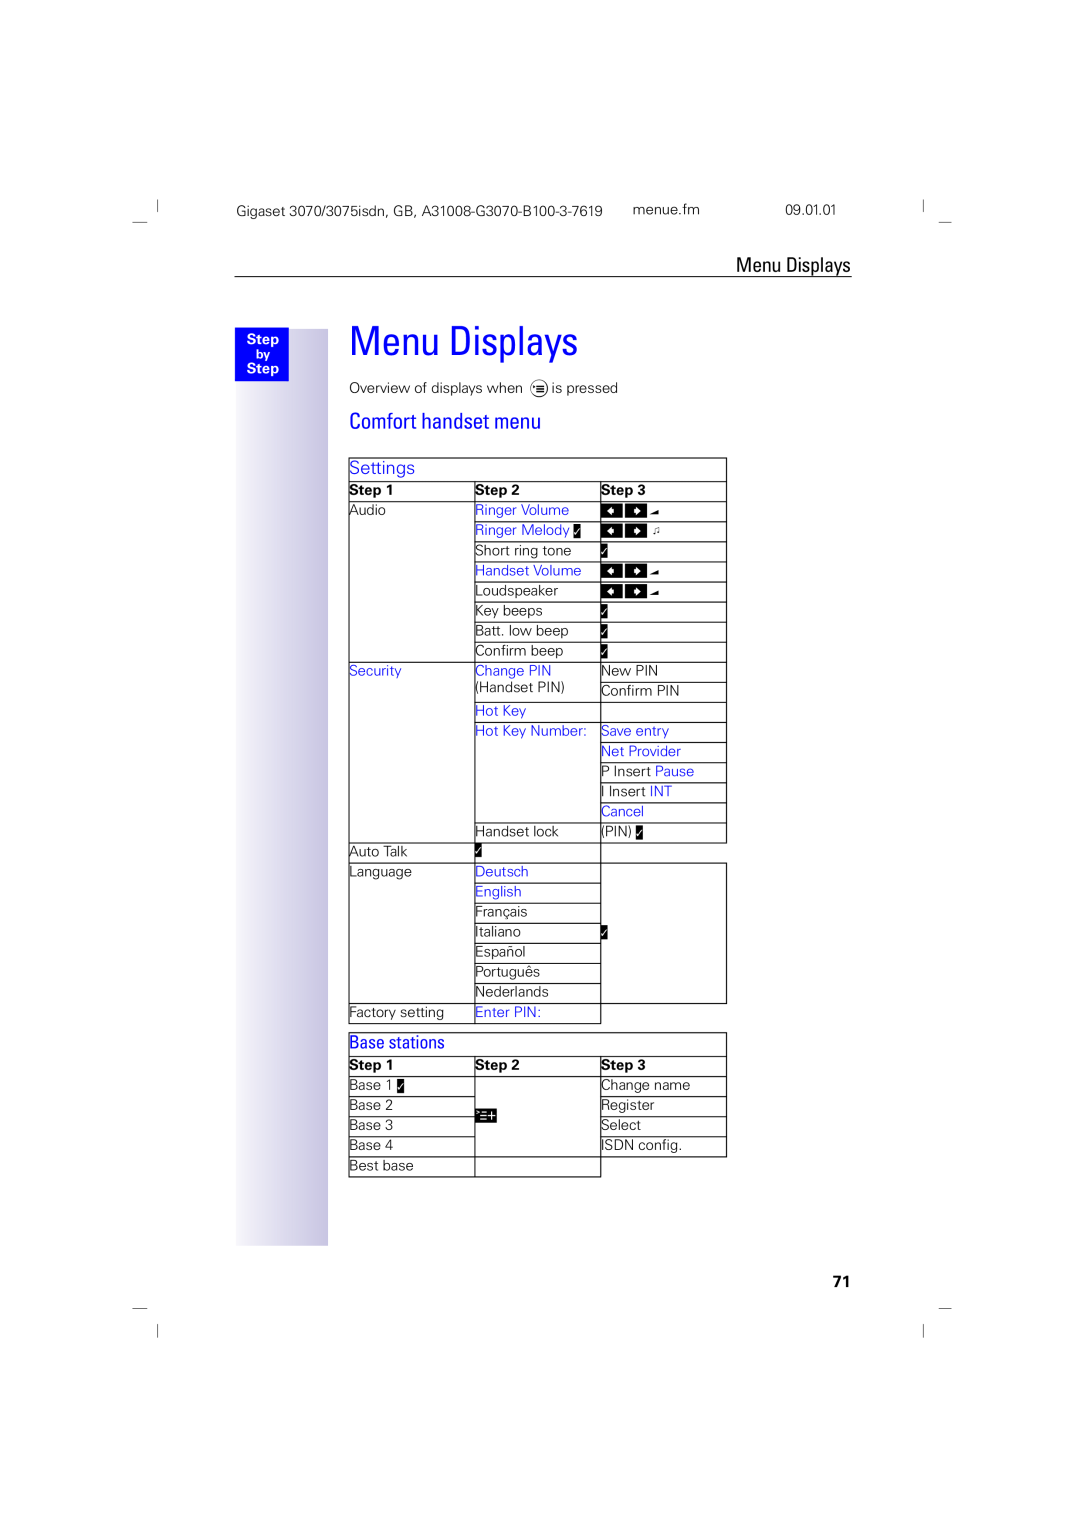 Siemens 75, 3070 manual Menu Displays, Comfort handset menu, Settings, Base stations, Step 